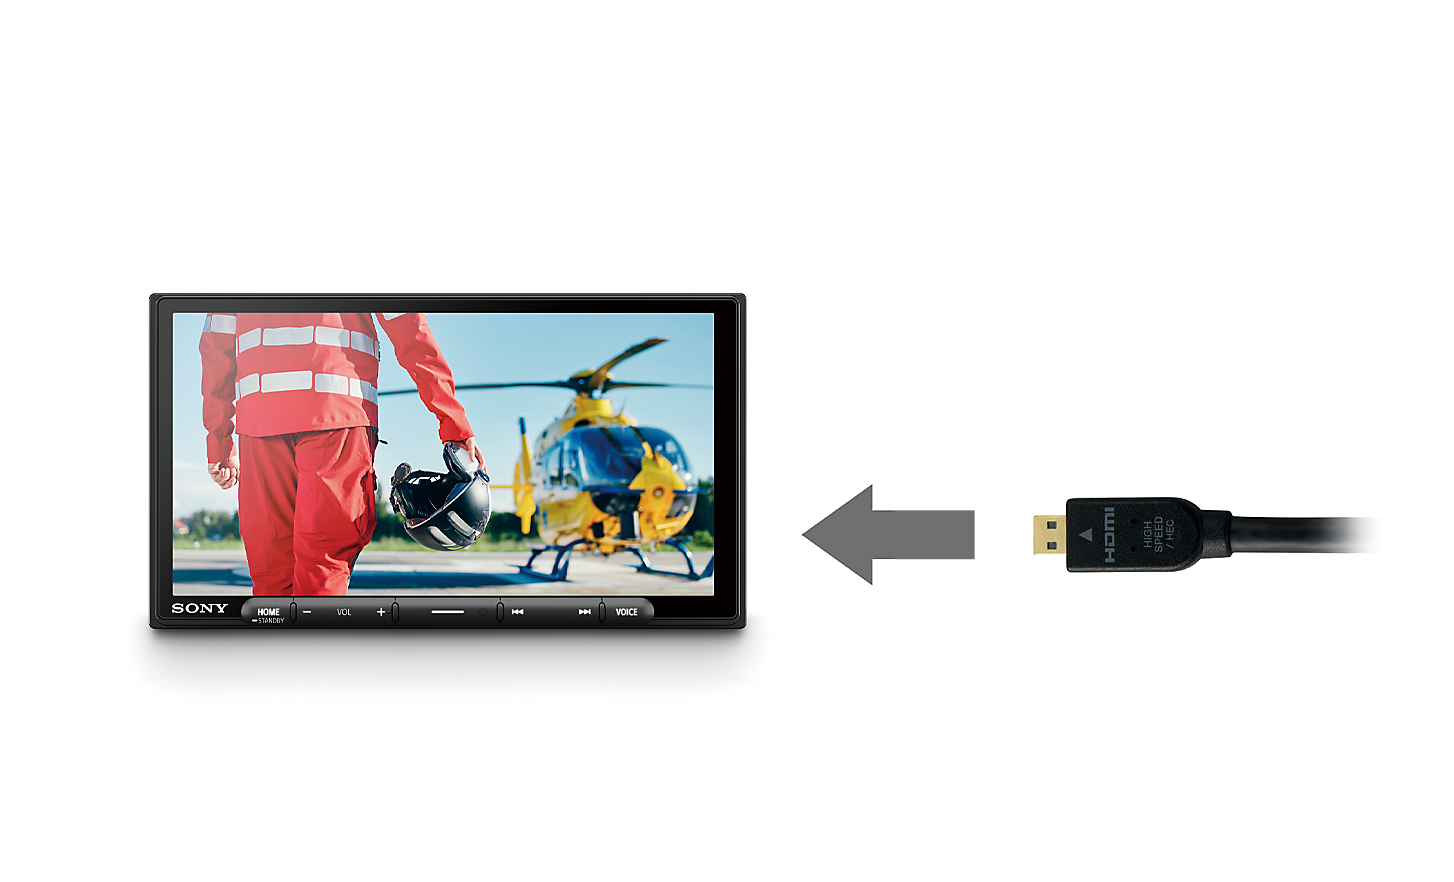 Bilde av en HDMI-kabel med en pil som peker mot XAV-AX6050, mens det vises en pilot og et helikopter på skjermen